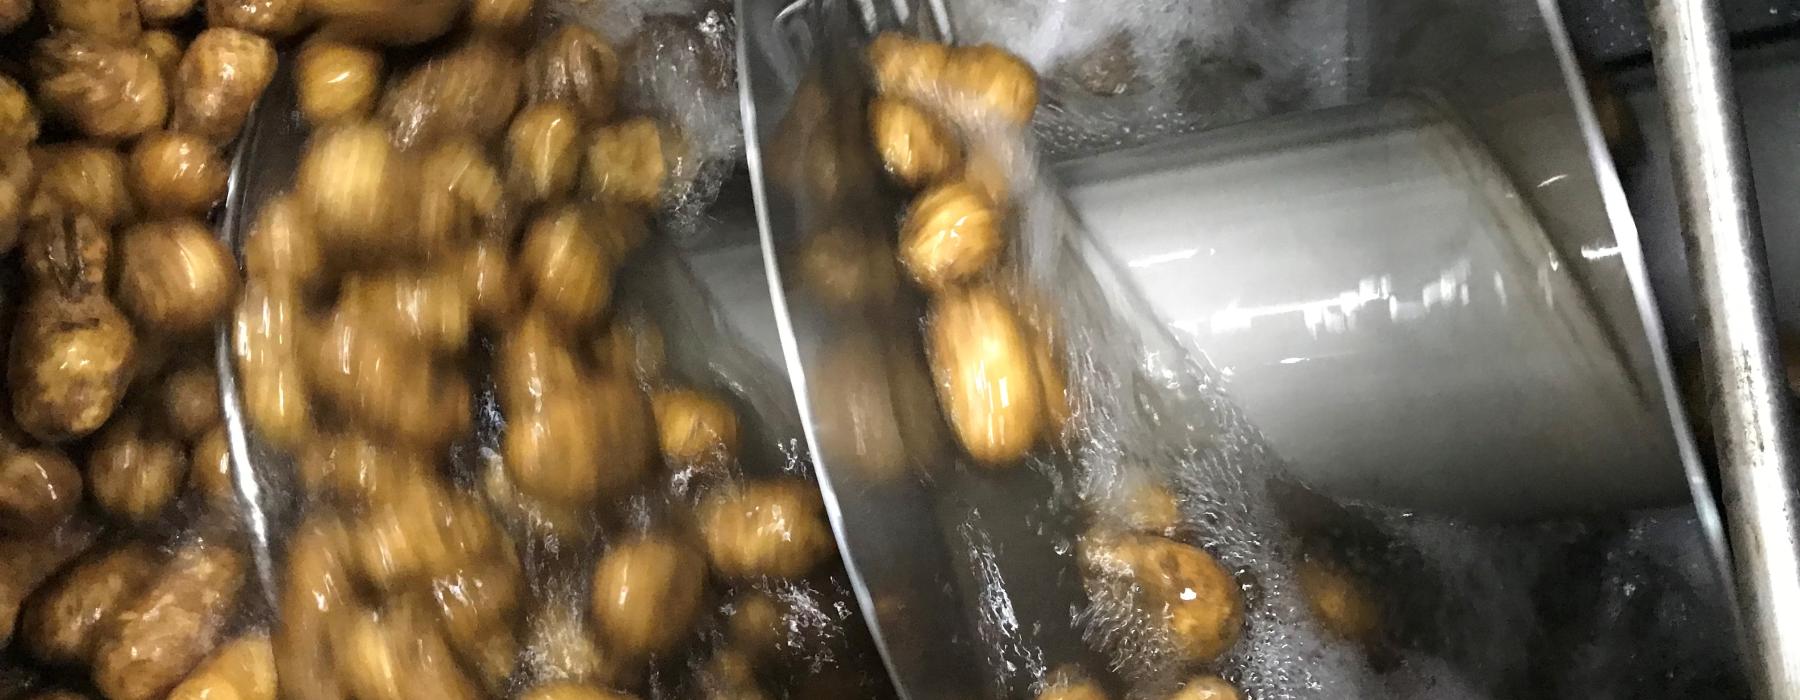 Washing & Packing potatoes